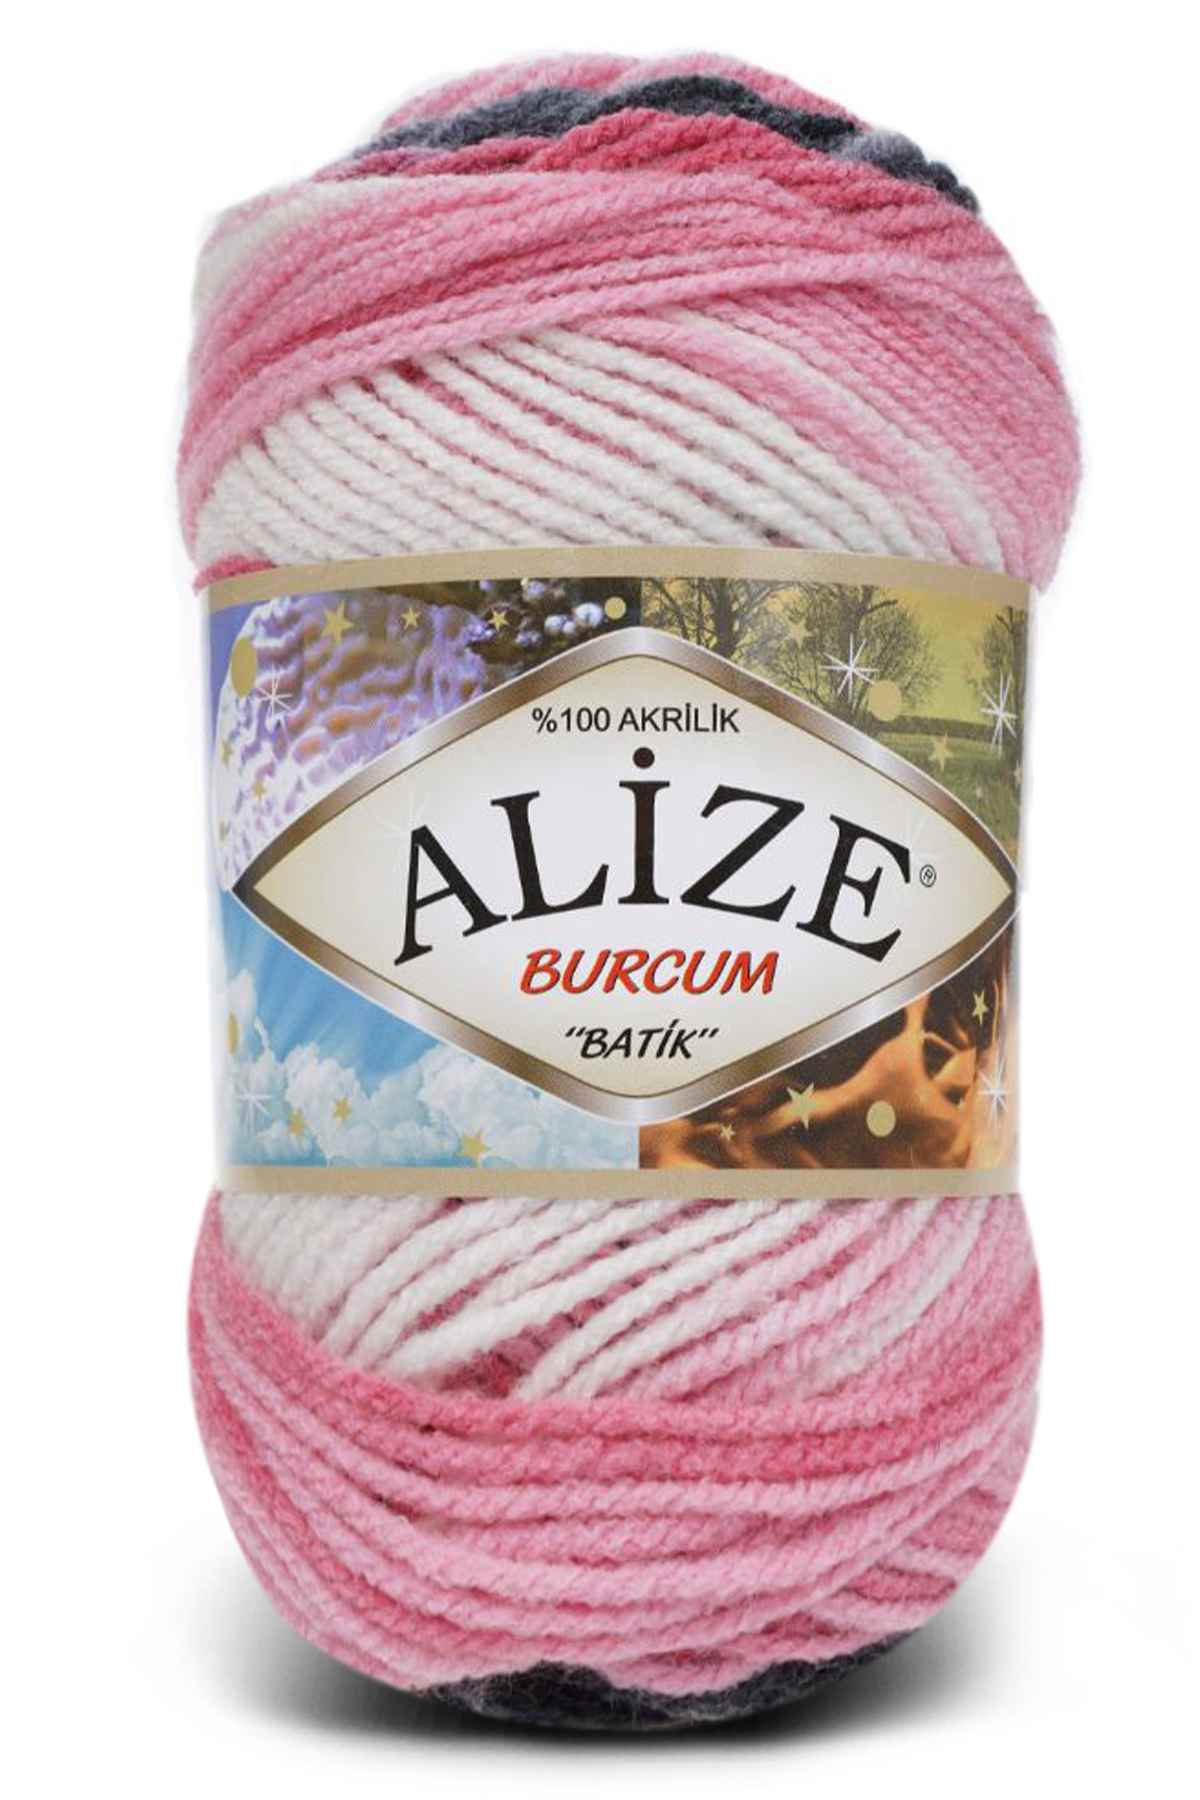 Alize Burcum Multicolor Acrylic Yarn